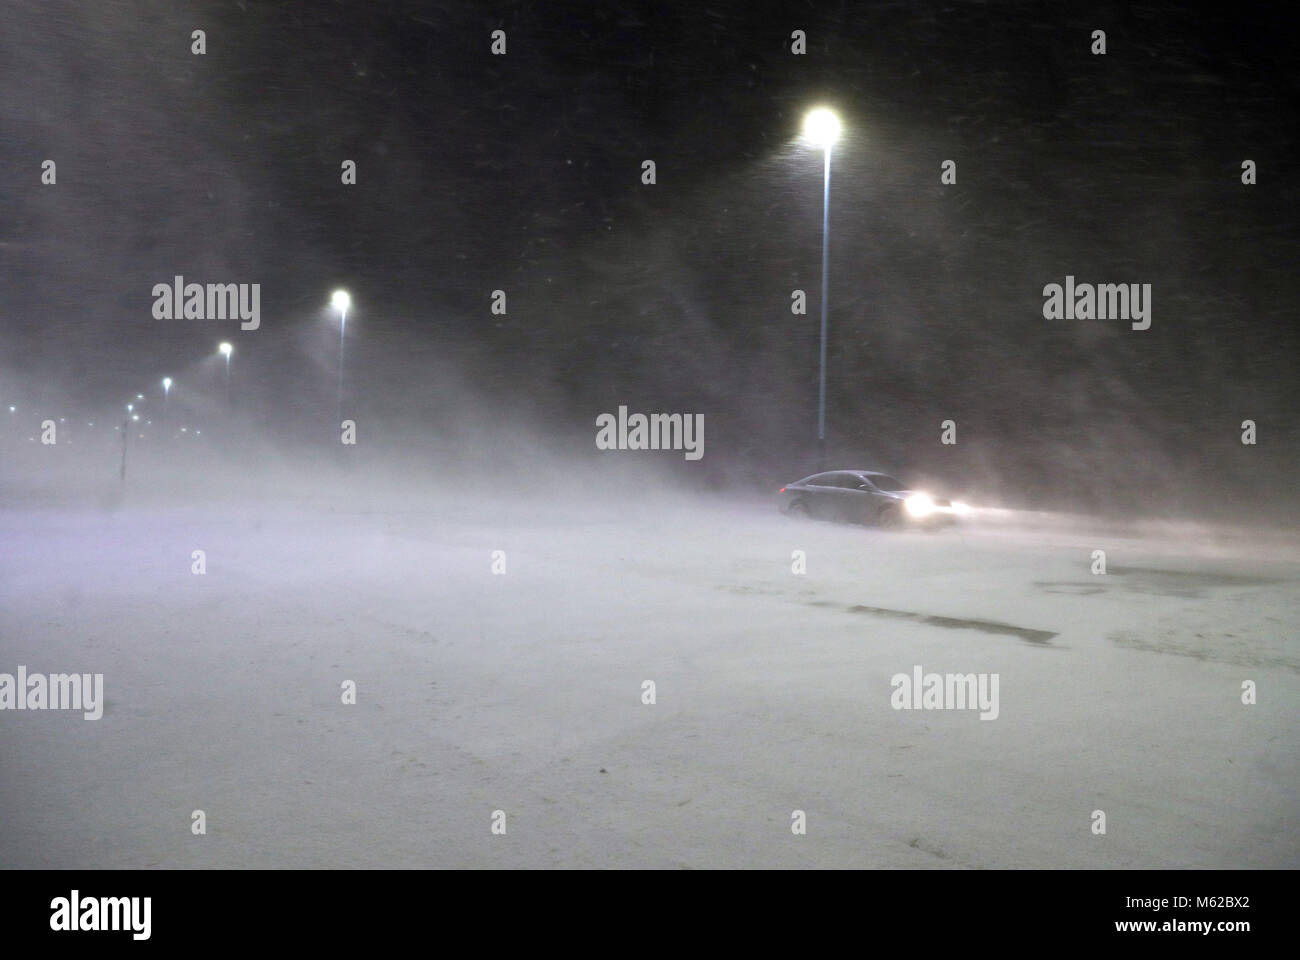 Une voiture passe à travers une tempête de neige à Whitley Bay, comme beaucoup de neige a causé plus de misère pour les voyageurs de la nuit. Banque D'Images